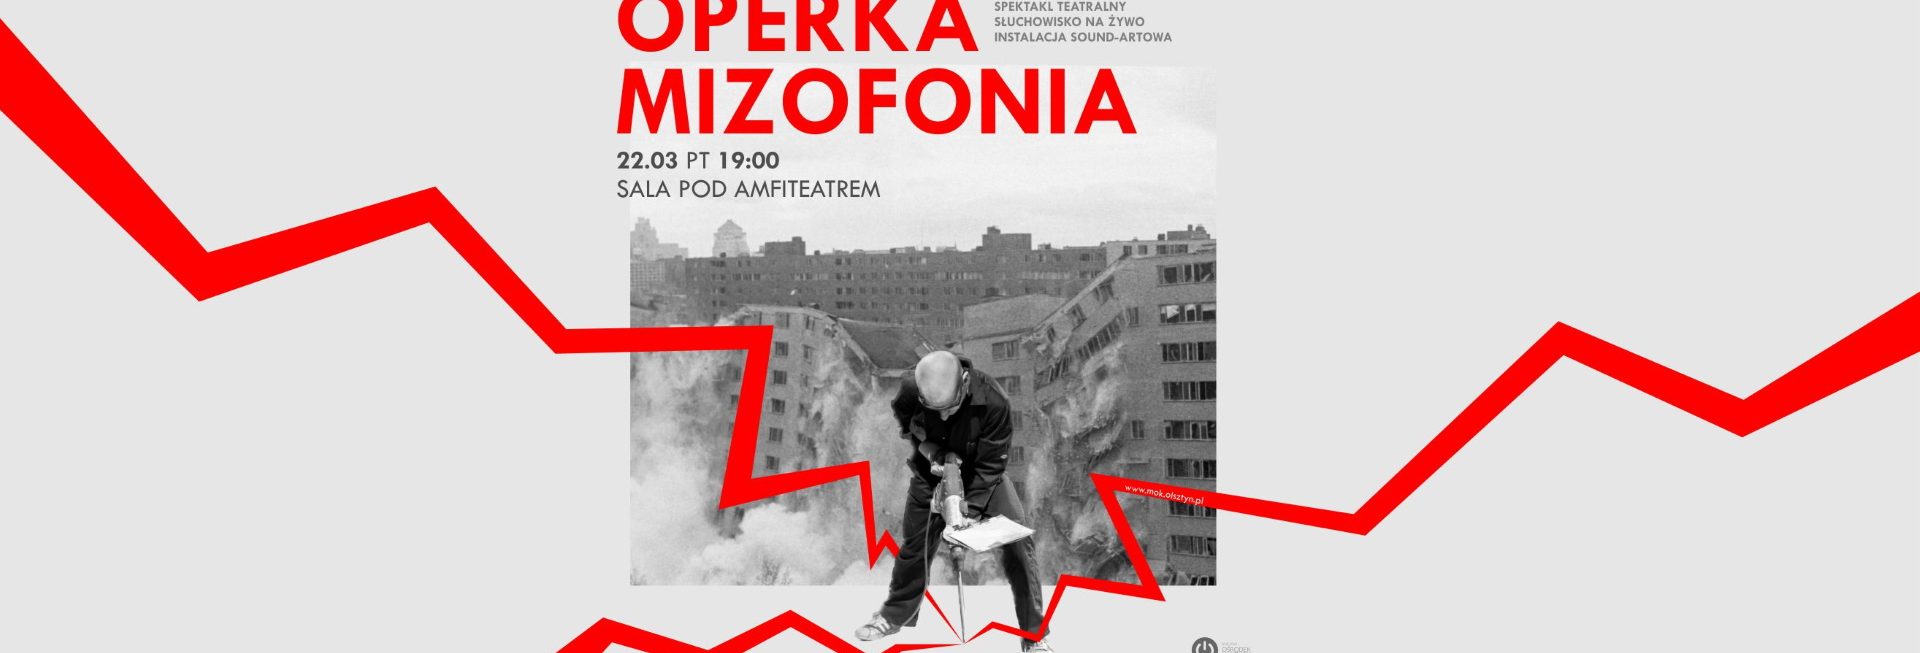 Plakat zapraszający w piątek 22 marca 2024 r. do Olsztyna na spektakl teatralny "Operka / Mizofonia" Olsztyn 2024.